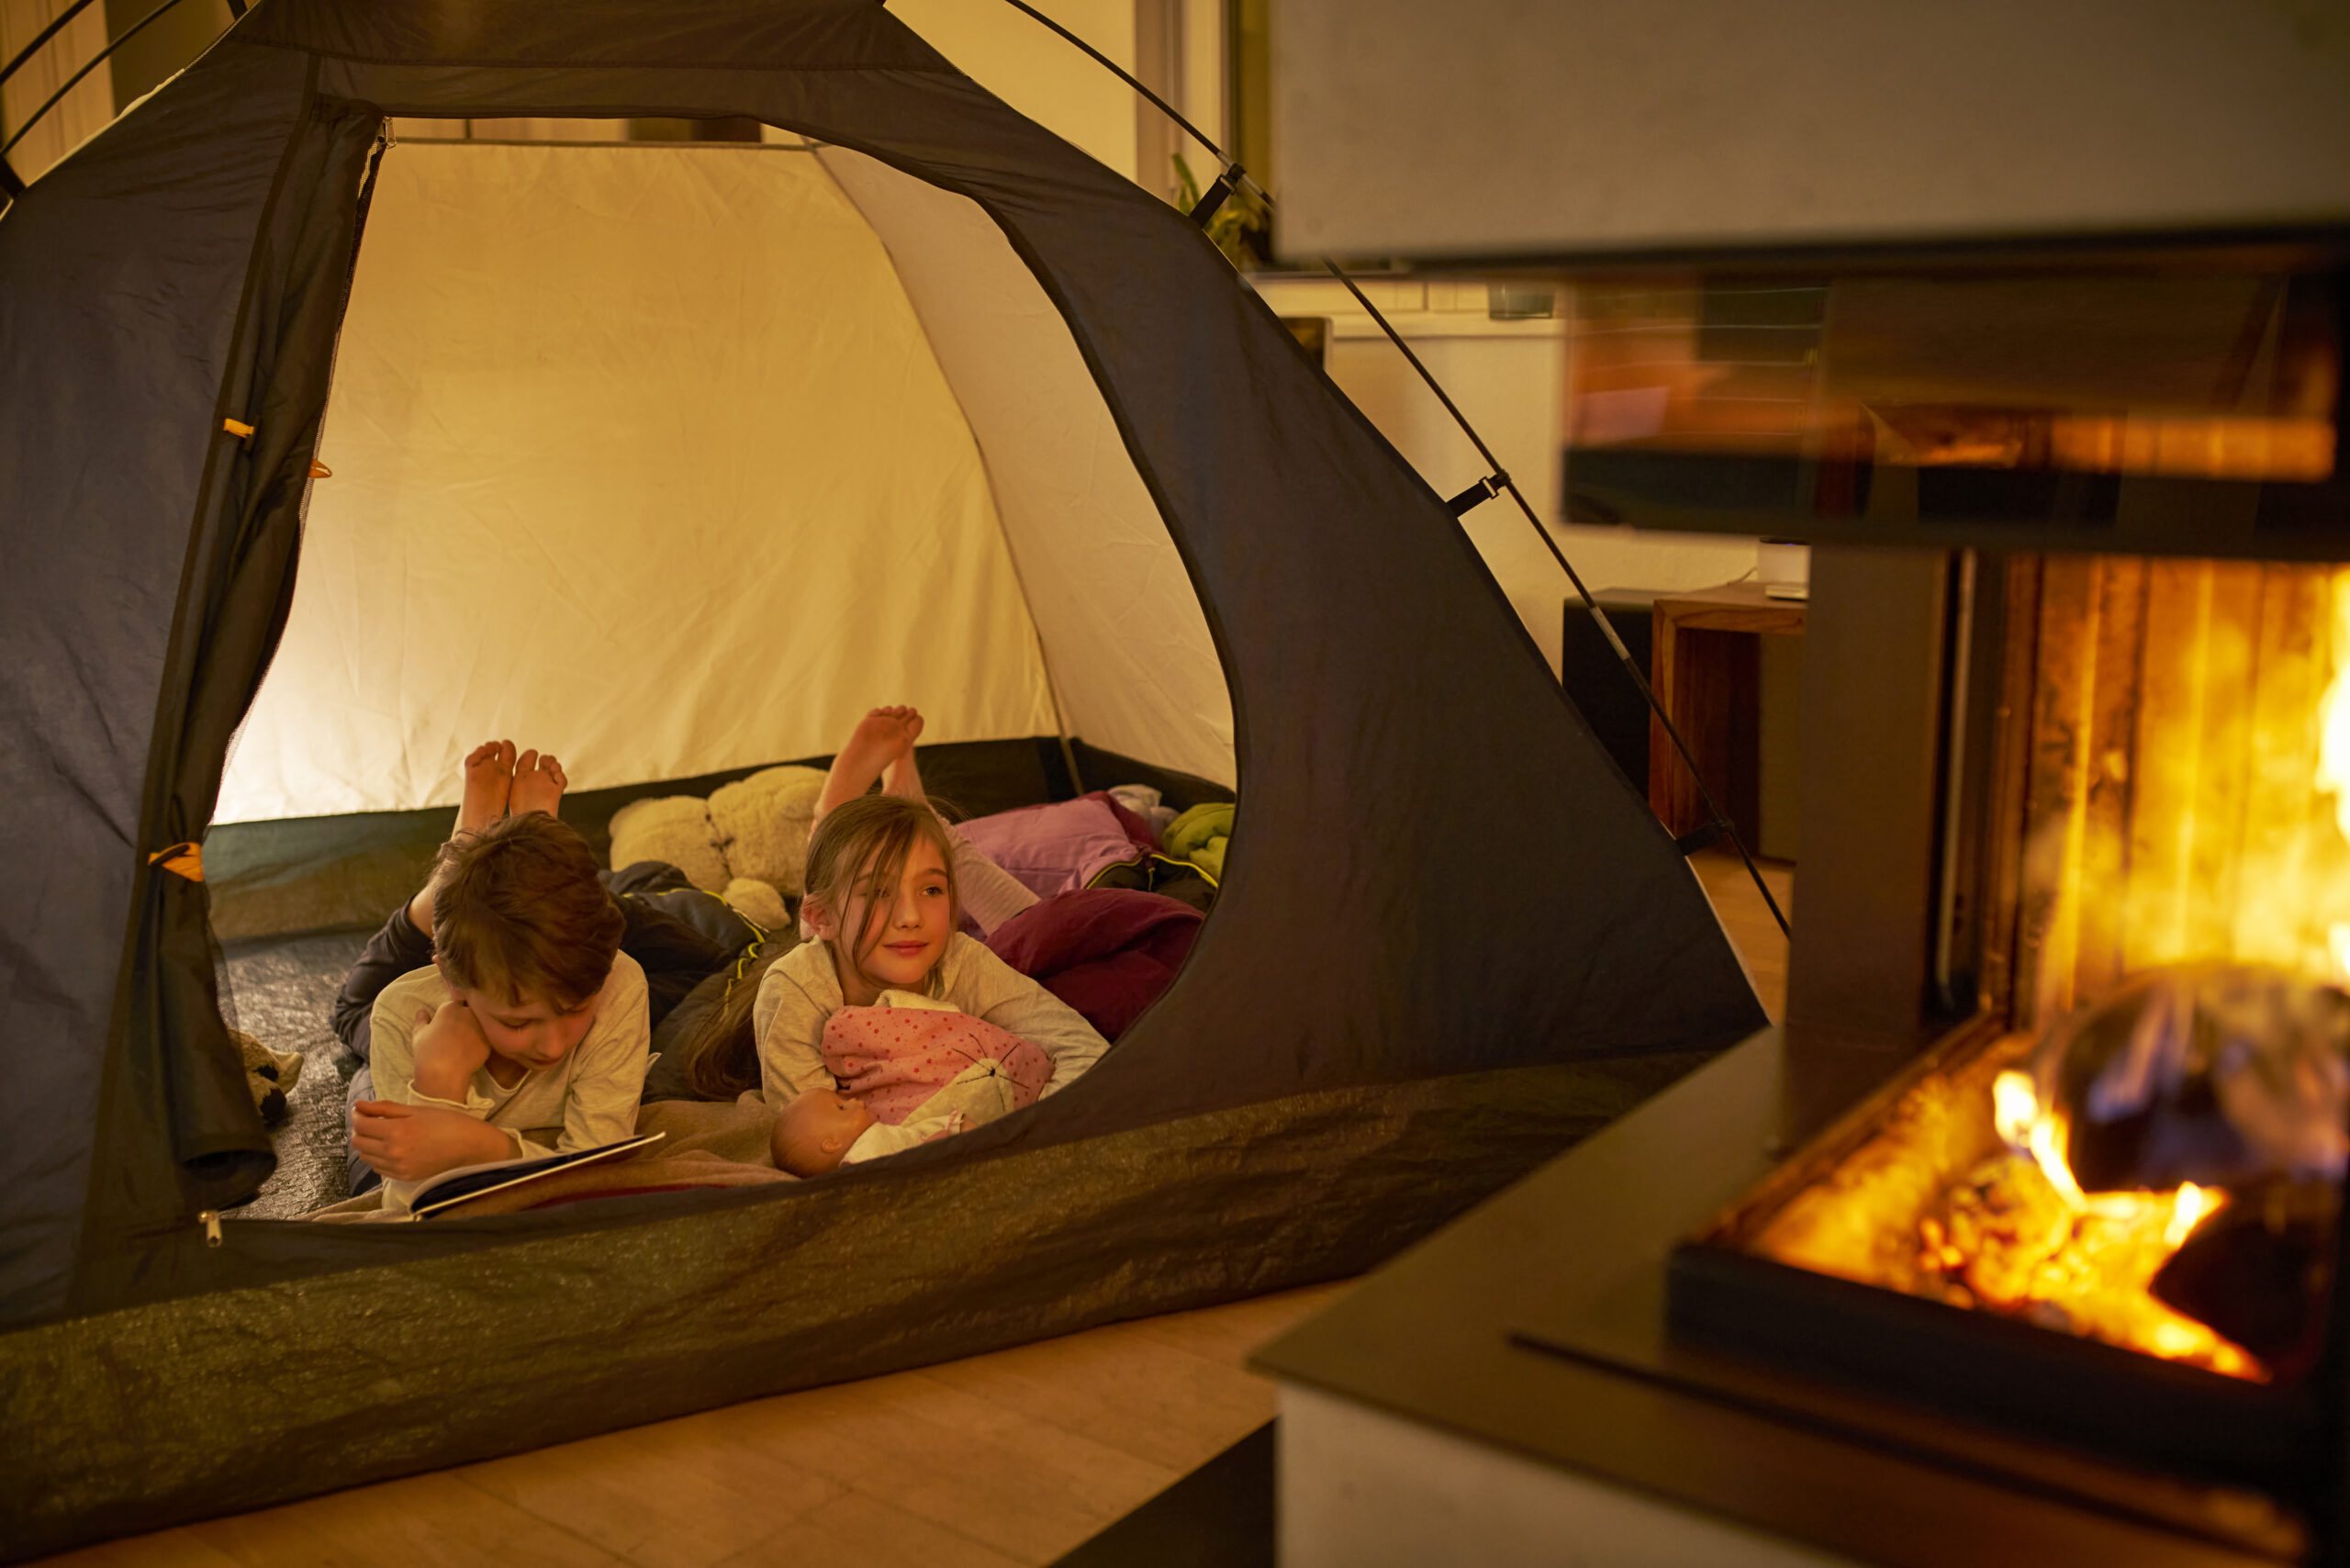 Kinder campen im Wohnzimmer wegen der Corona-Pandemie. Junge (10) liest seiner kleinen Schwester (8) vor. Feuer, Zelt.Zuhause bleiben.